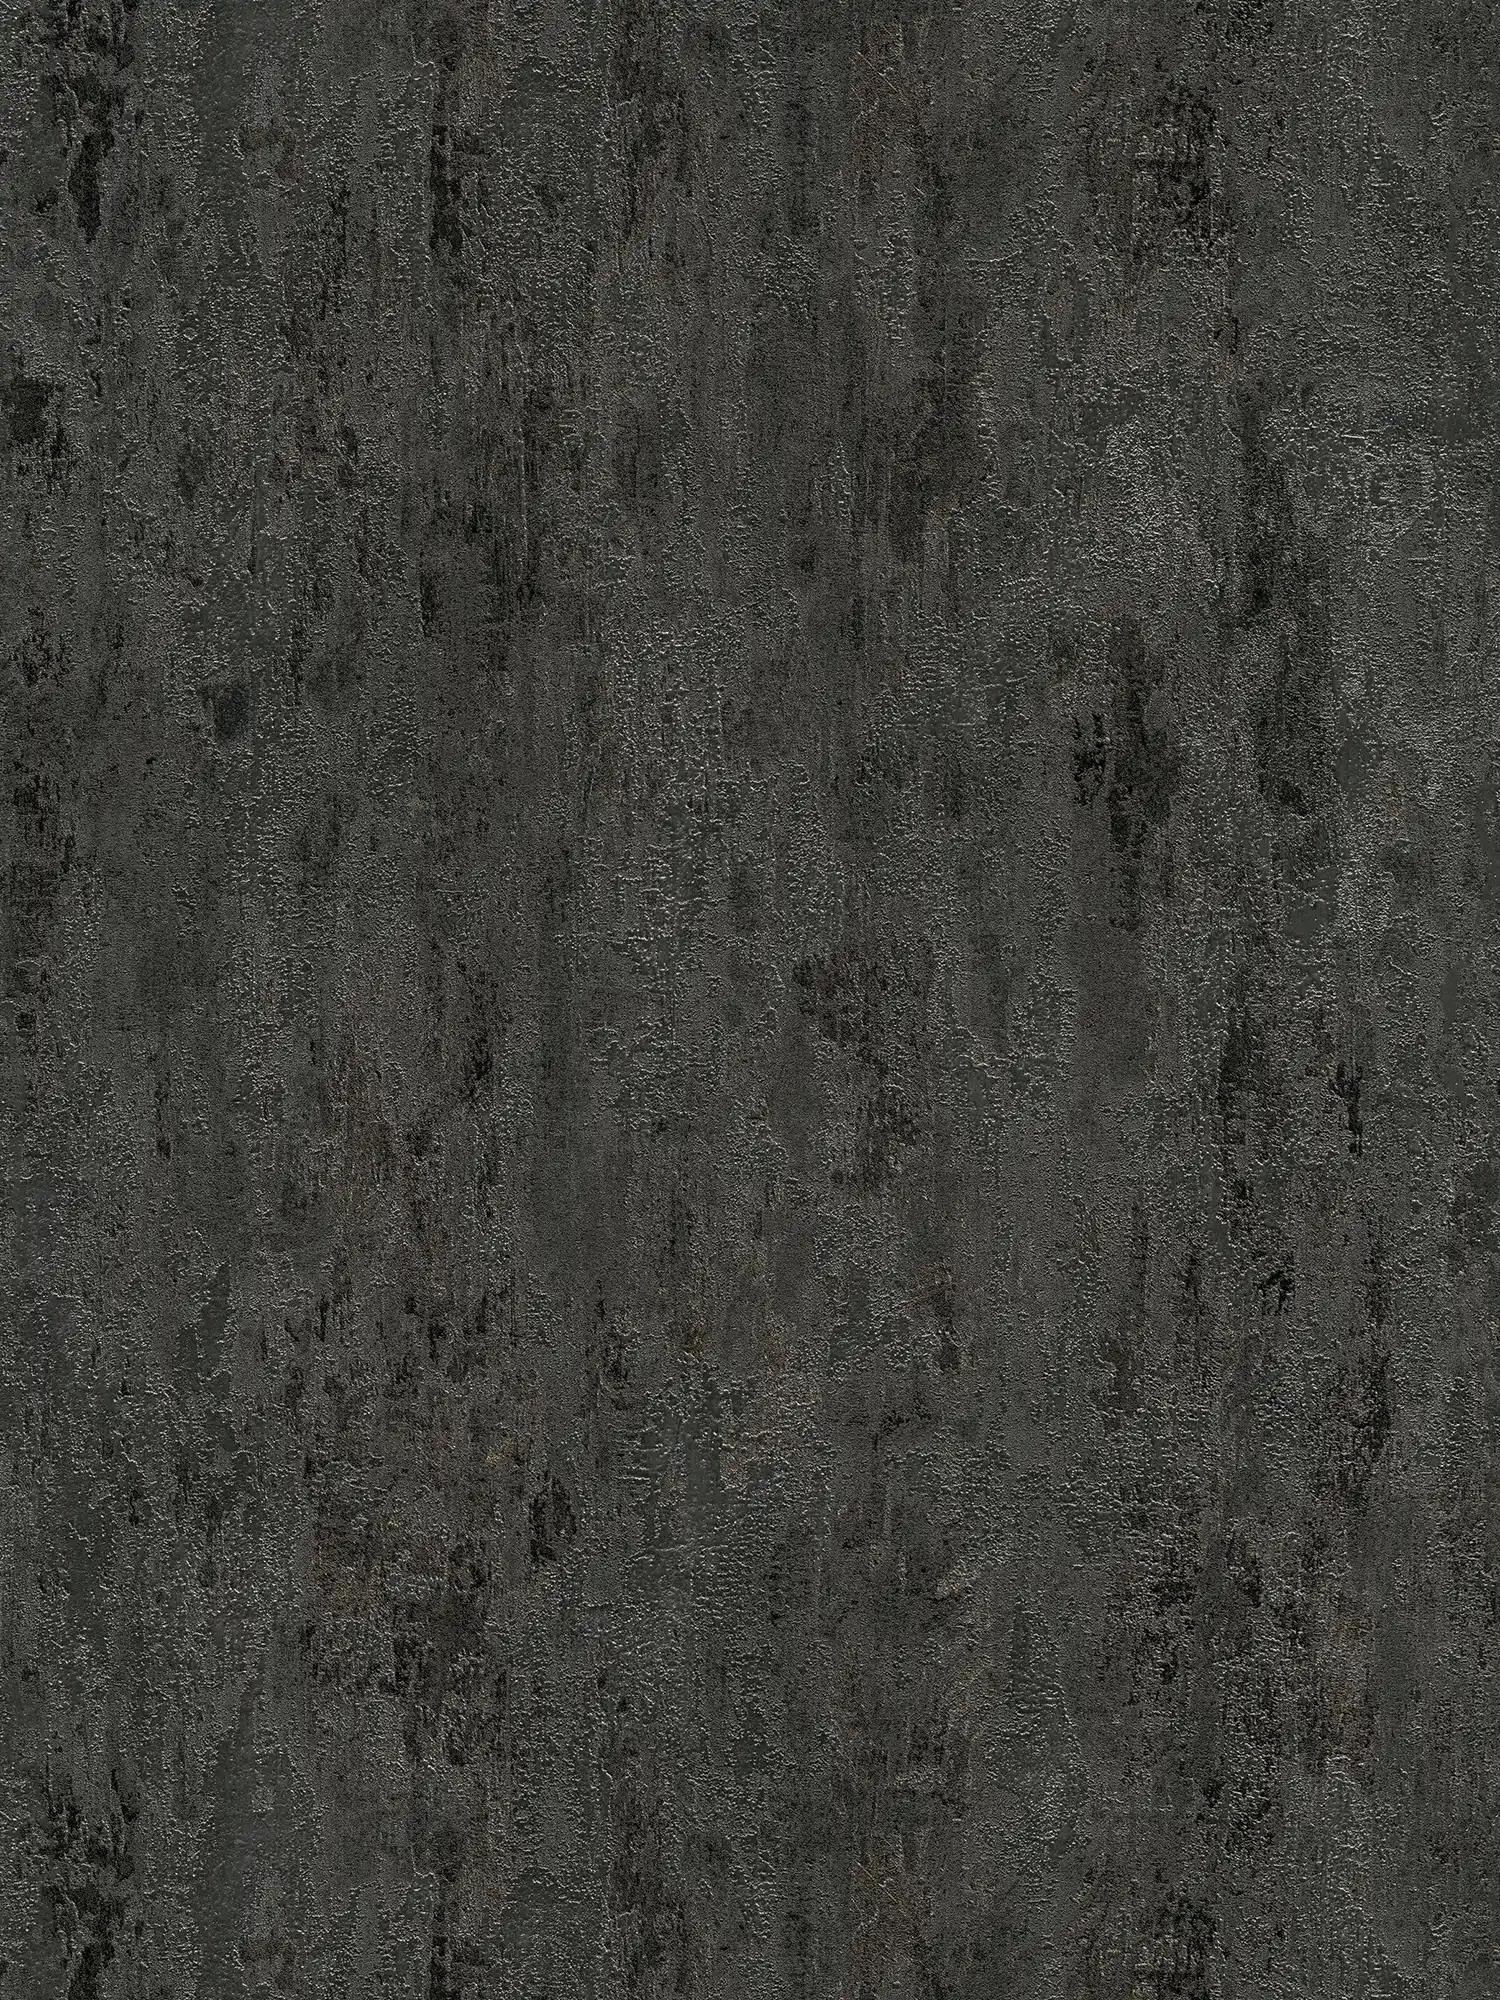 Papier peint structuré rustique aspect métal anthracite - noir, argent, gris
